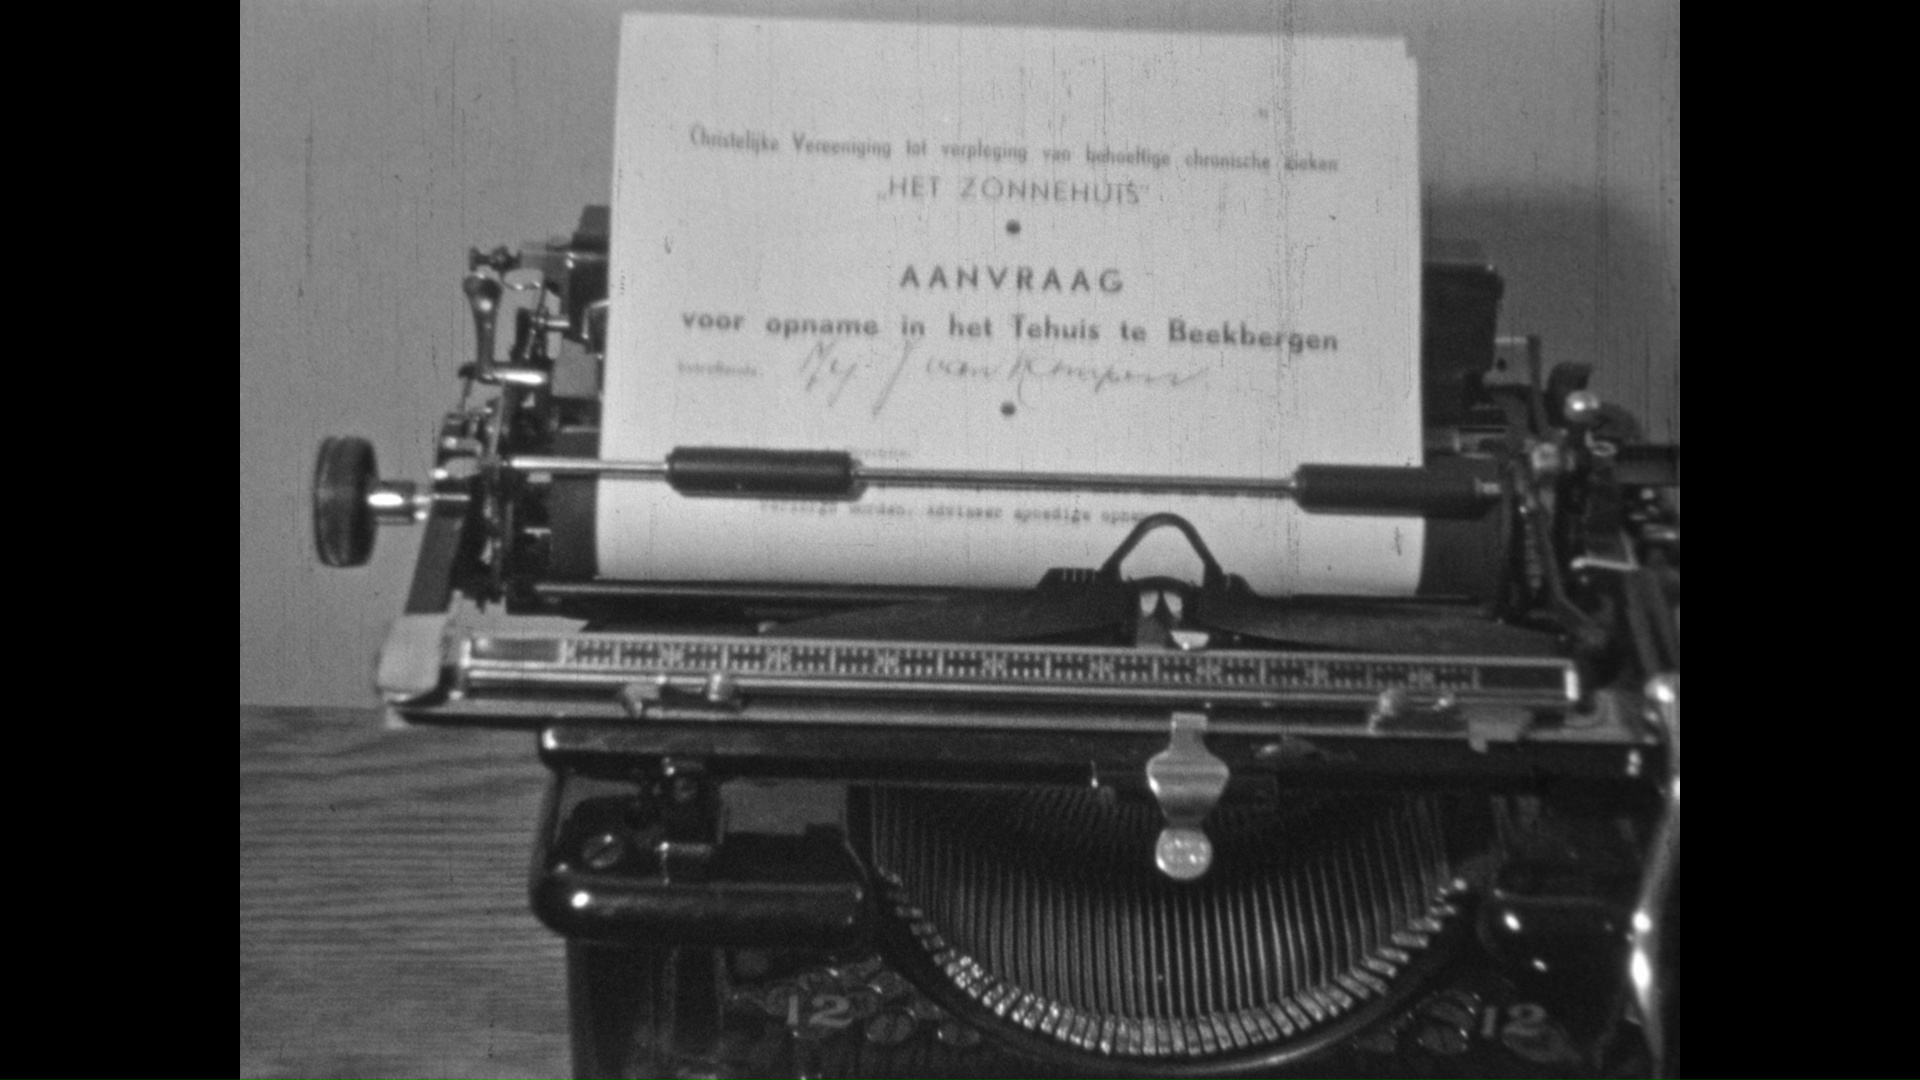 Een opnameformulier in een typemachine